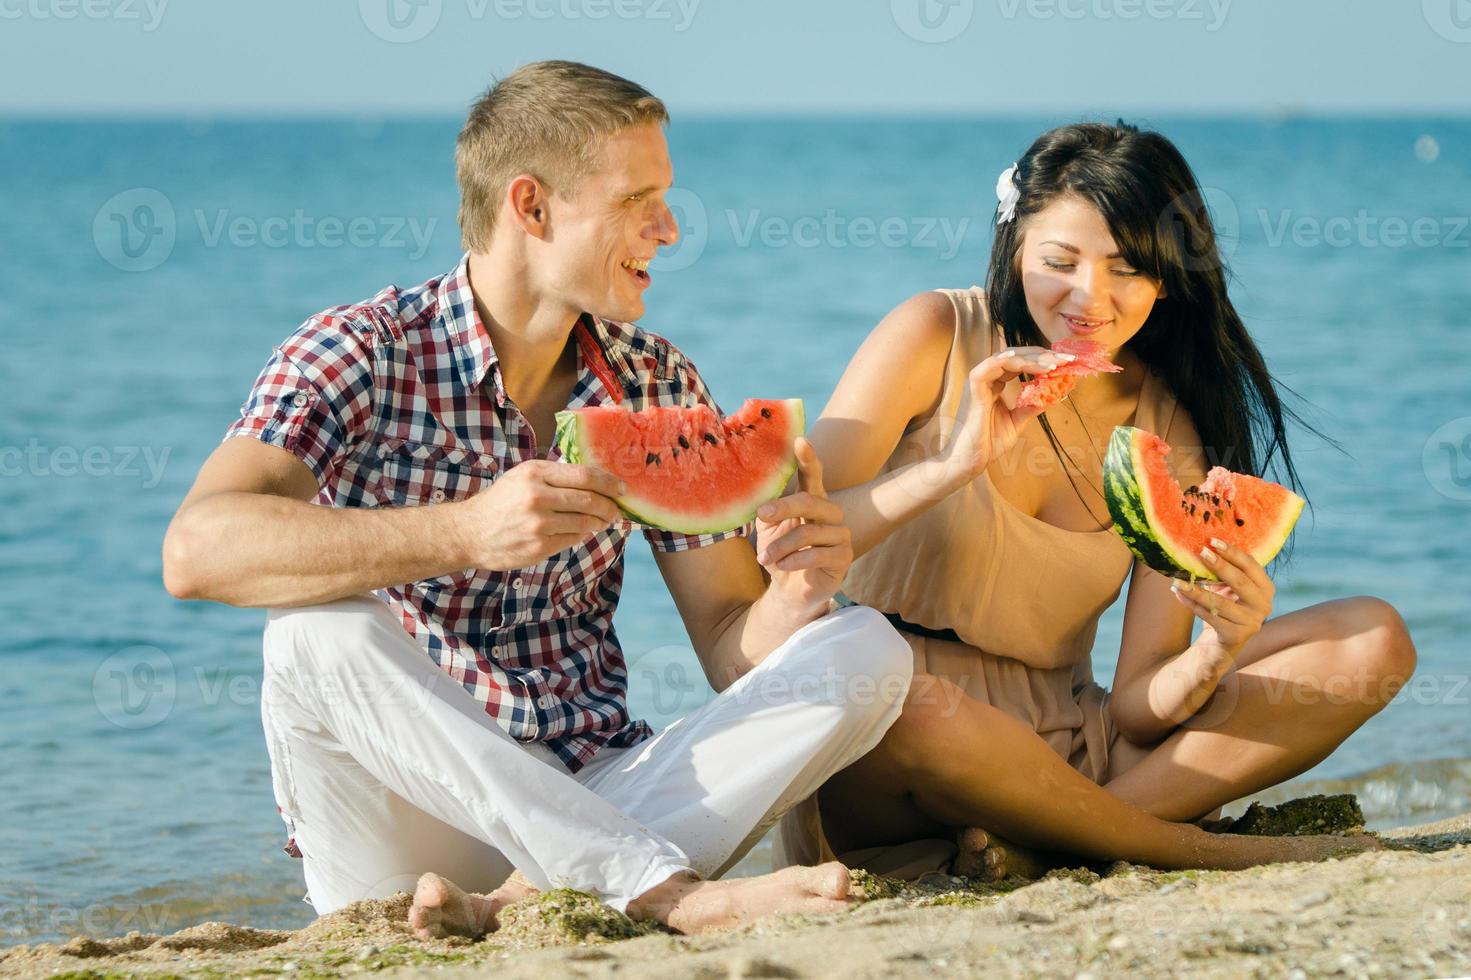 cara e uma garota na praia comendo uma melancia madura foto